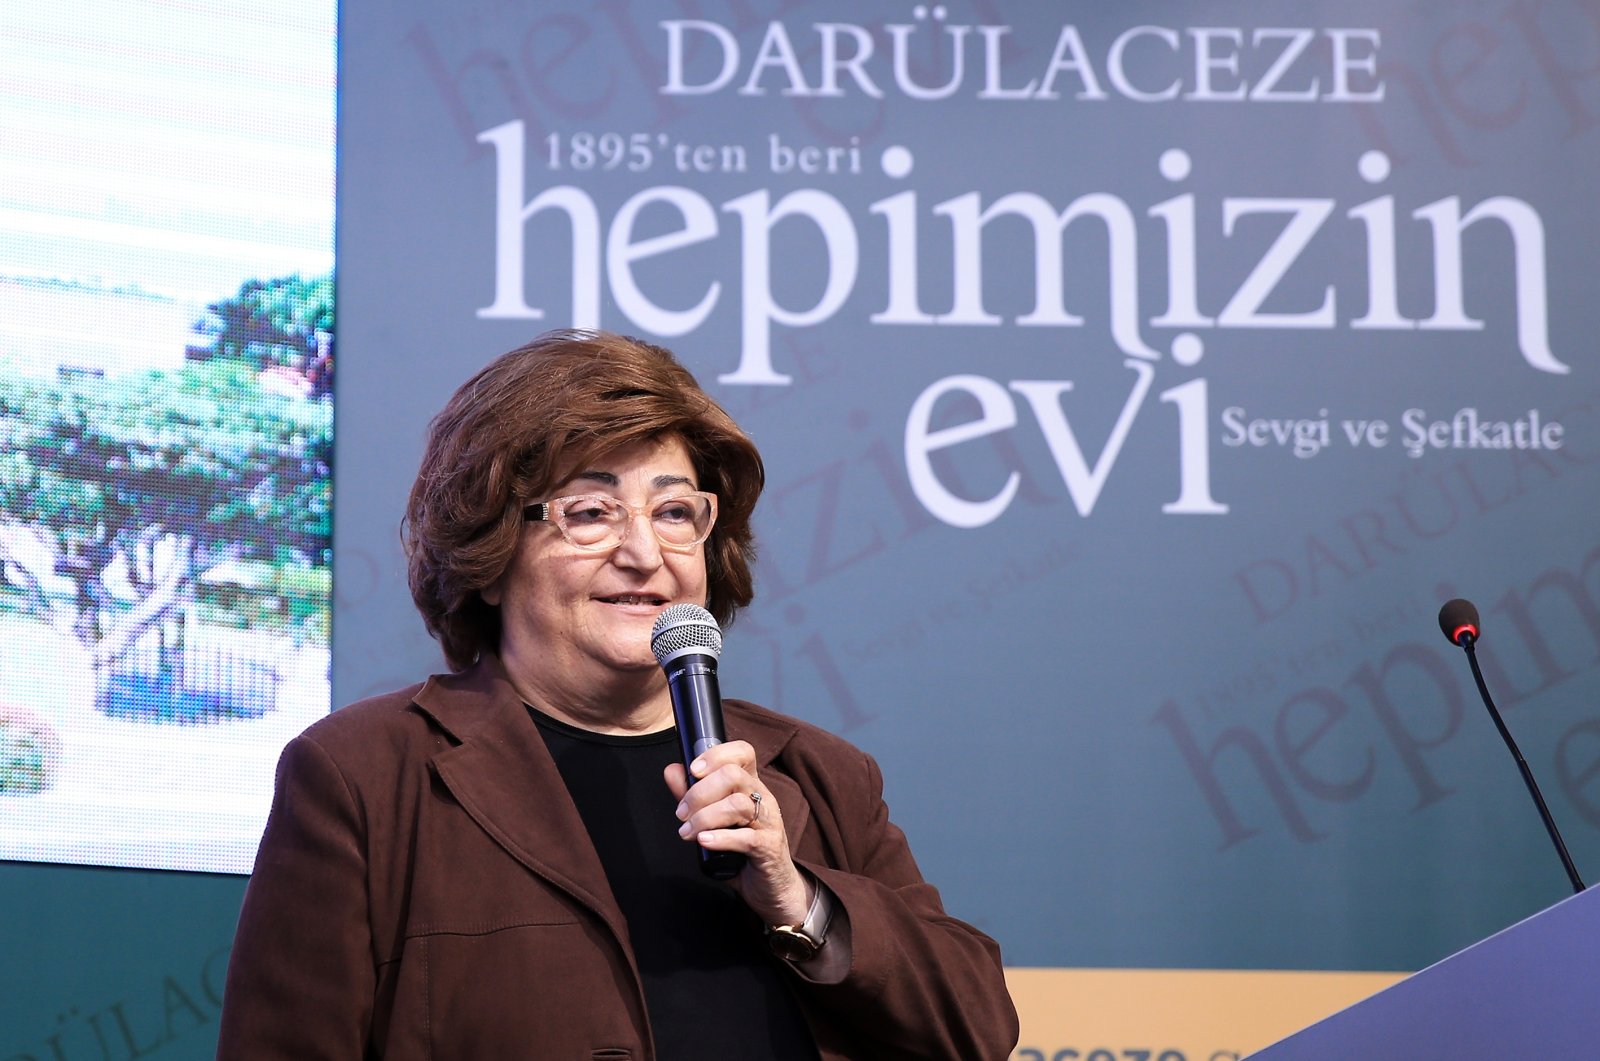 Güldal Akşit speaks at an event in Istanbul, Turkey, April 13, 2019. (AA Photo)